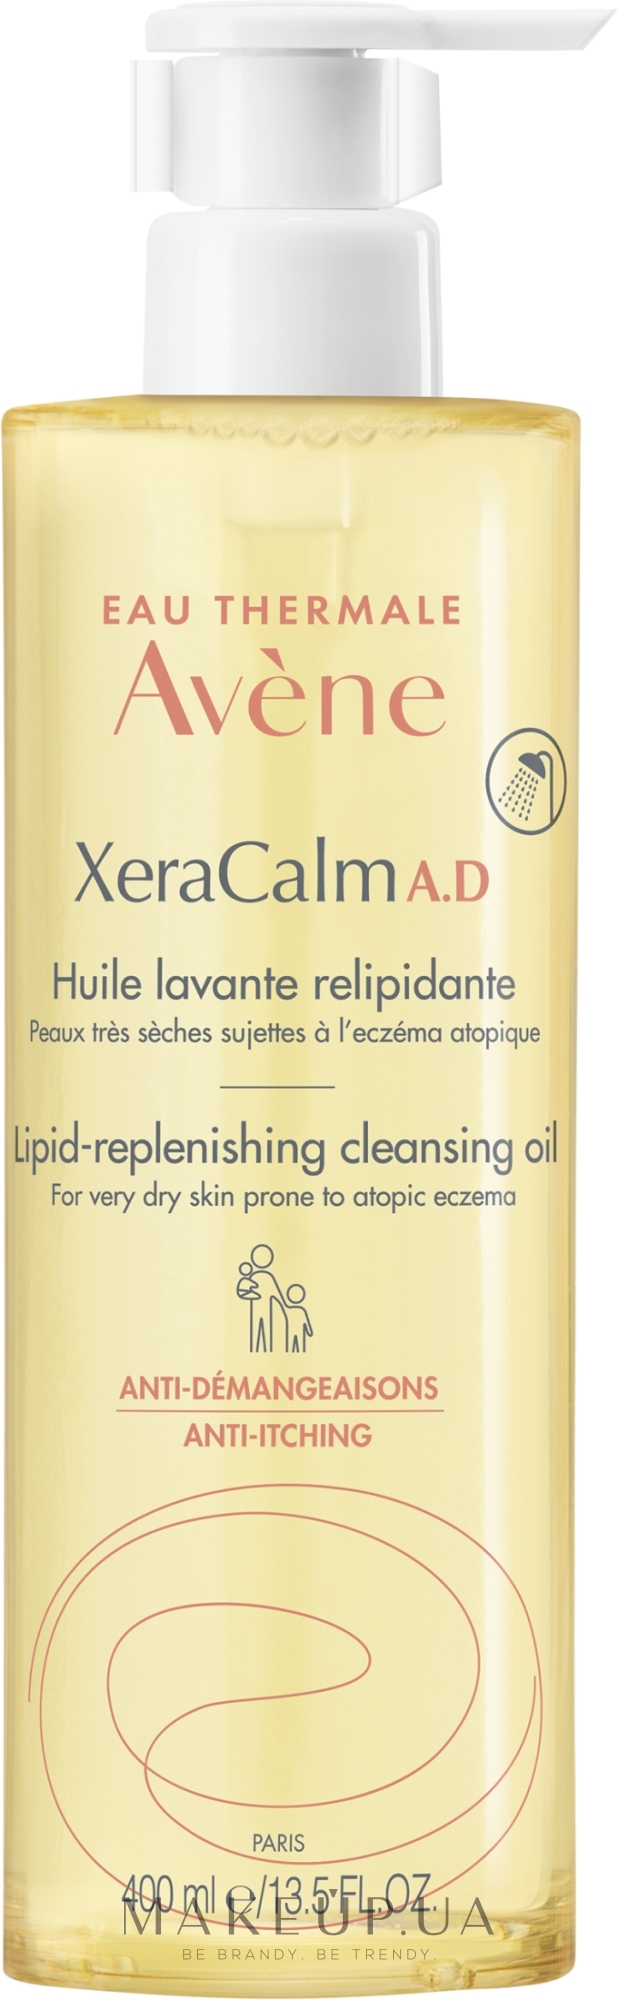 Очищающее масло для душа для сухой и атопичной кожи - Avene Xeracalm A.d Cleansing Oil — фото 400ml